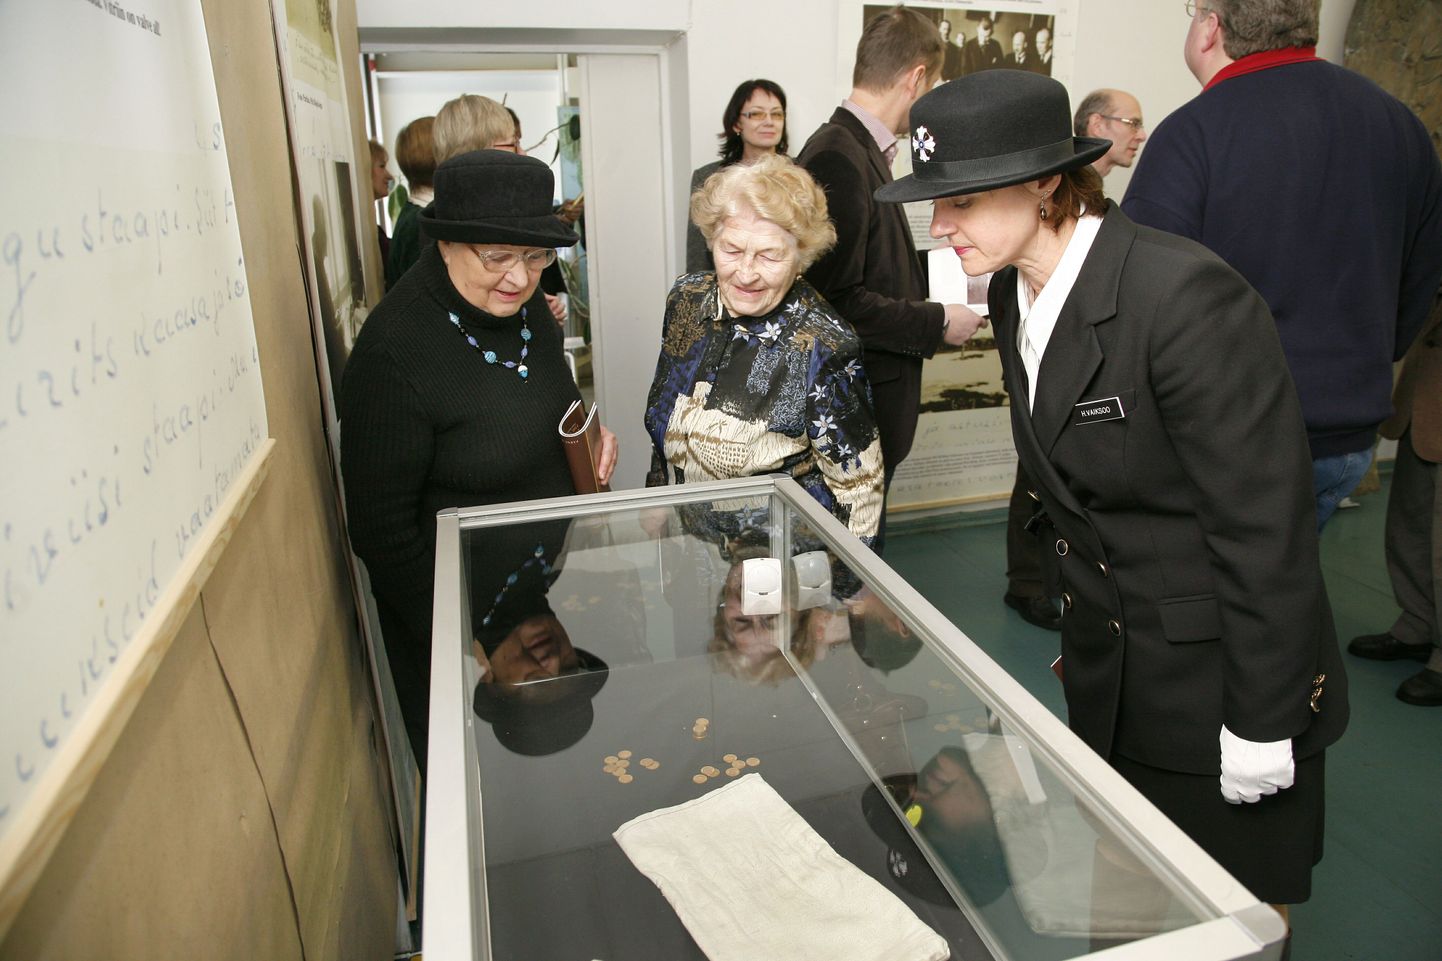 Pärnu muuseumis avati näitus "Vabariigi kuld", kus saab näha unikaalseid fotosid sellest, kuidas jõudis Venemaalt Eestisse 8 miljonit kuldrubla.